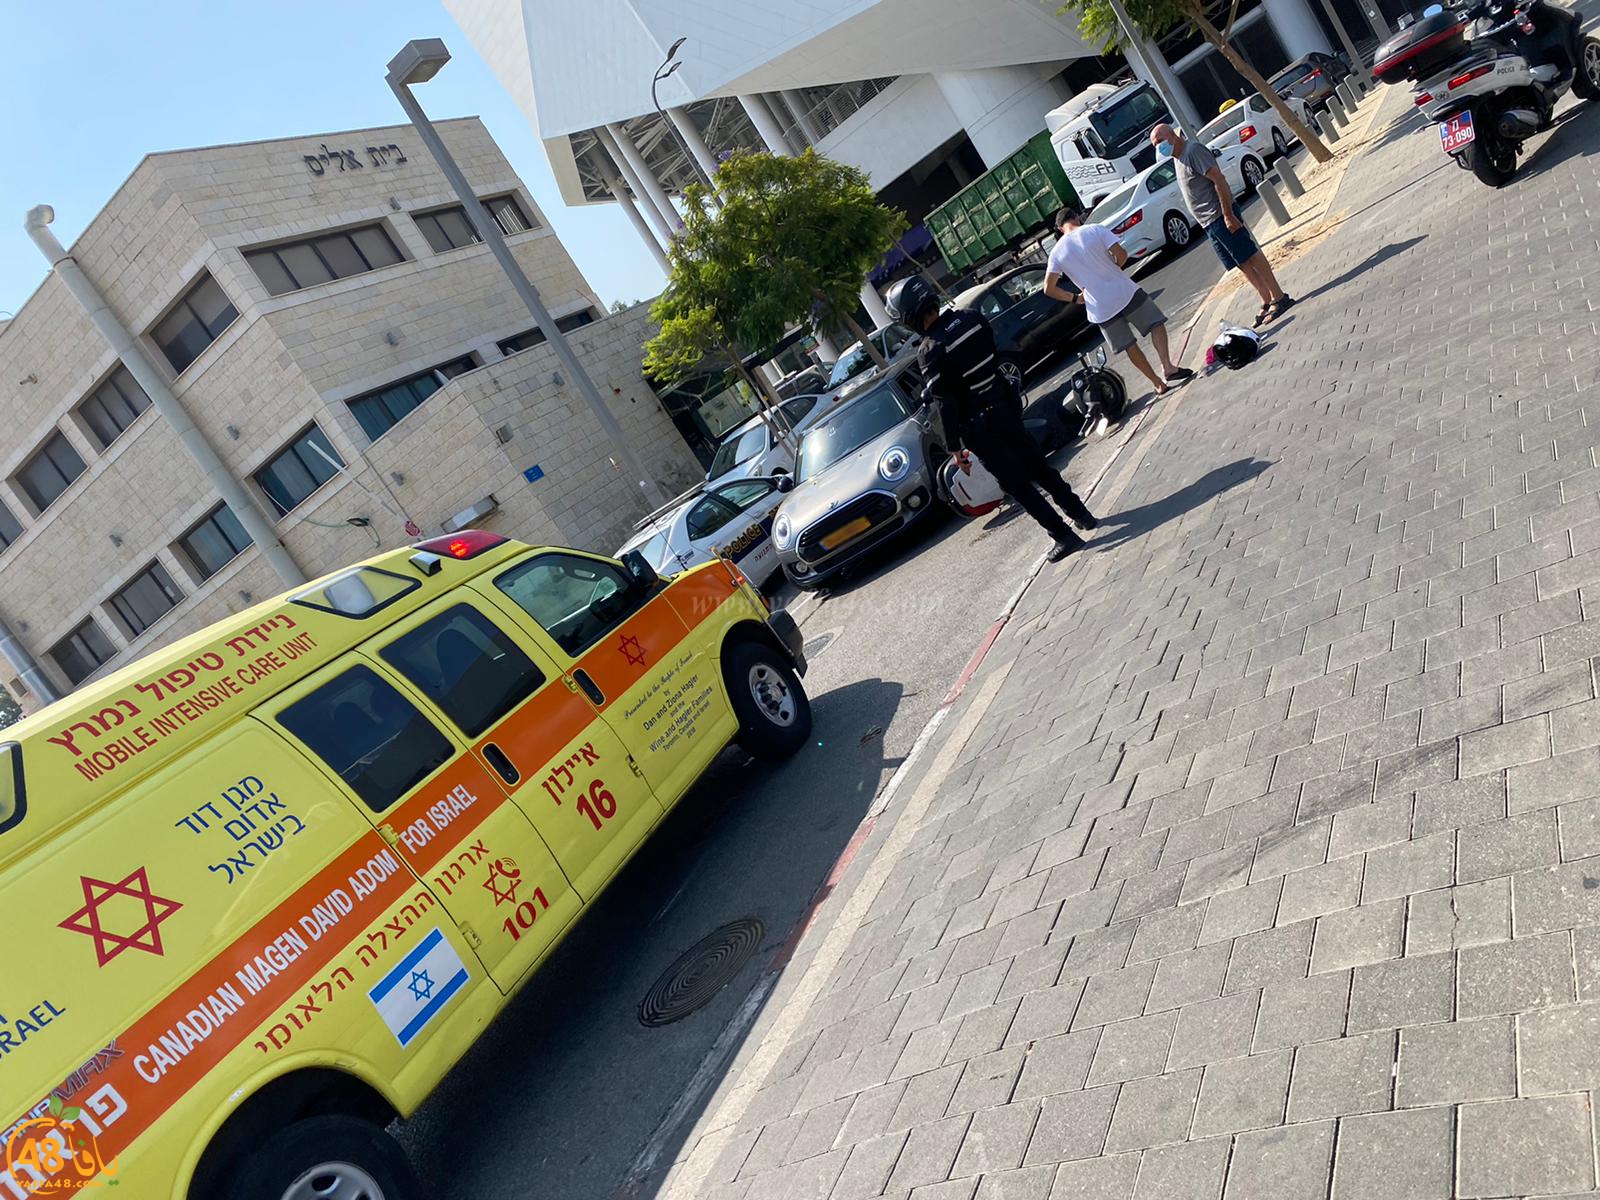  يافا: إصابة راكب دراجة نارية بحادث طرق بالمدينة